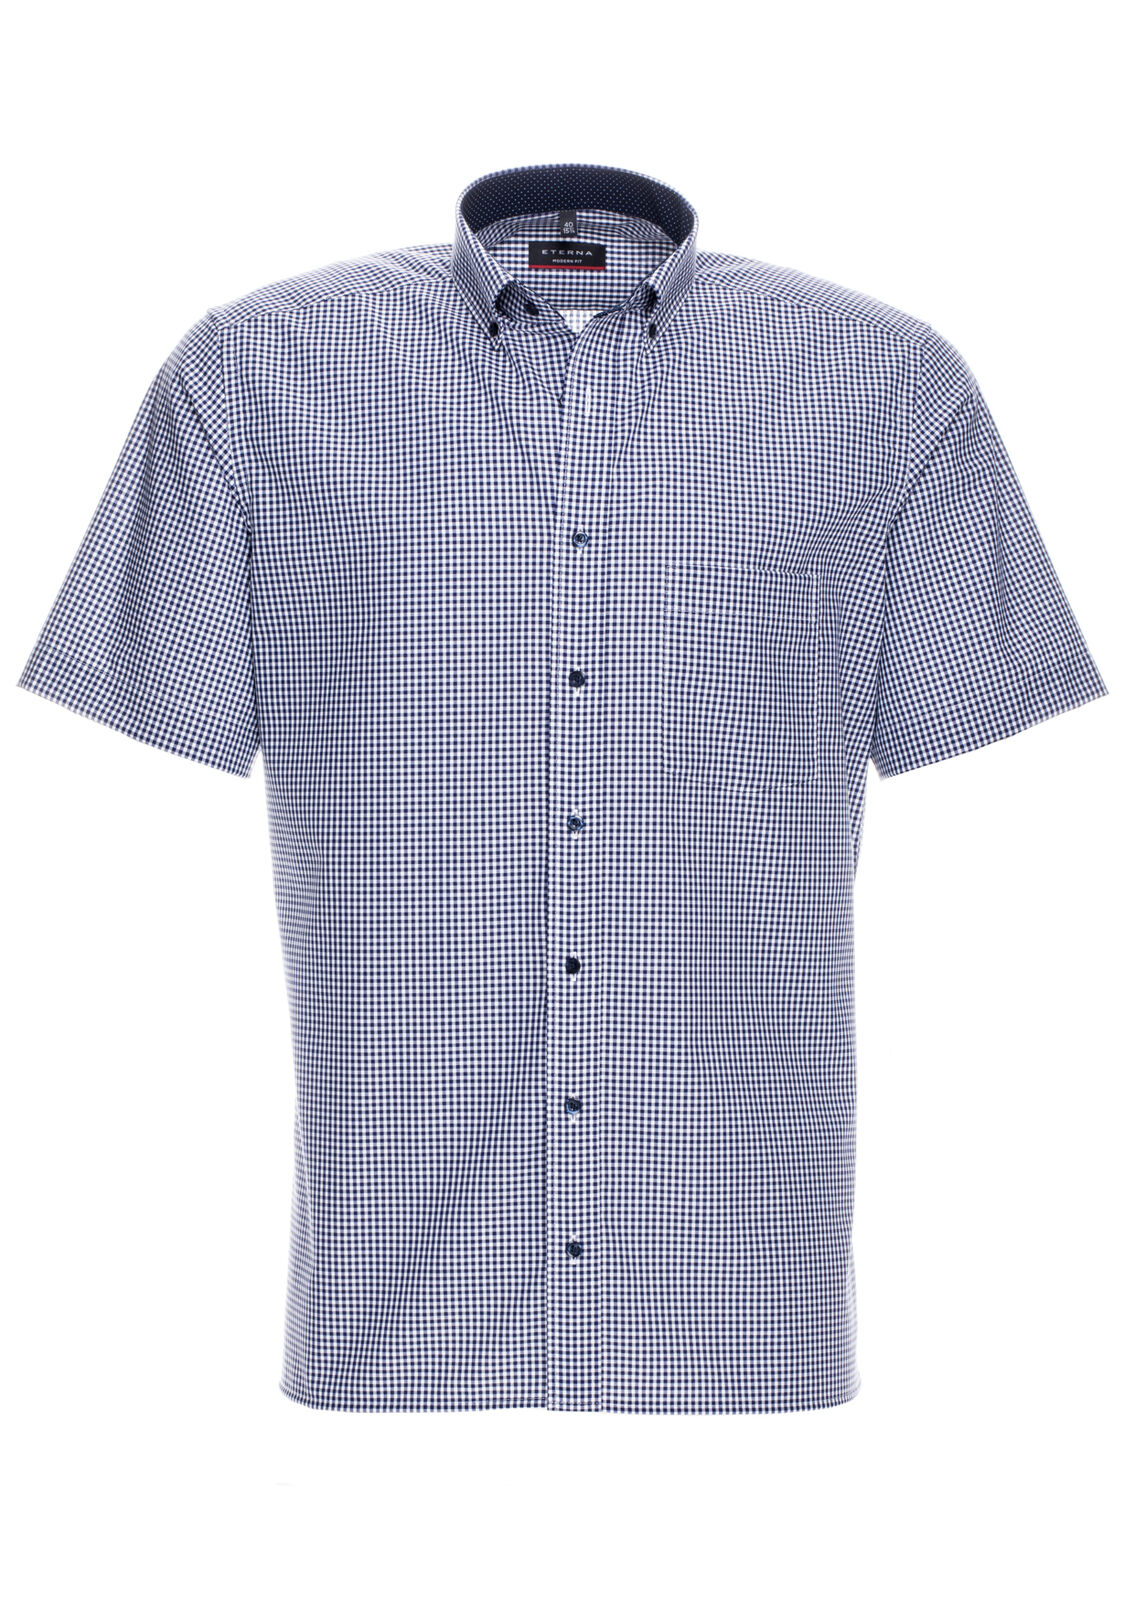 Eterna Short Sleeve Shirt Blue Checkered 8913-16-c143 - Modern Fit Shirt Men